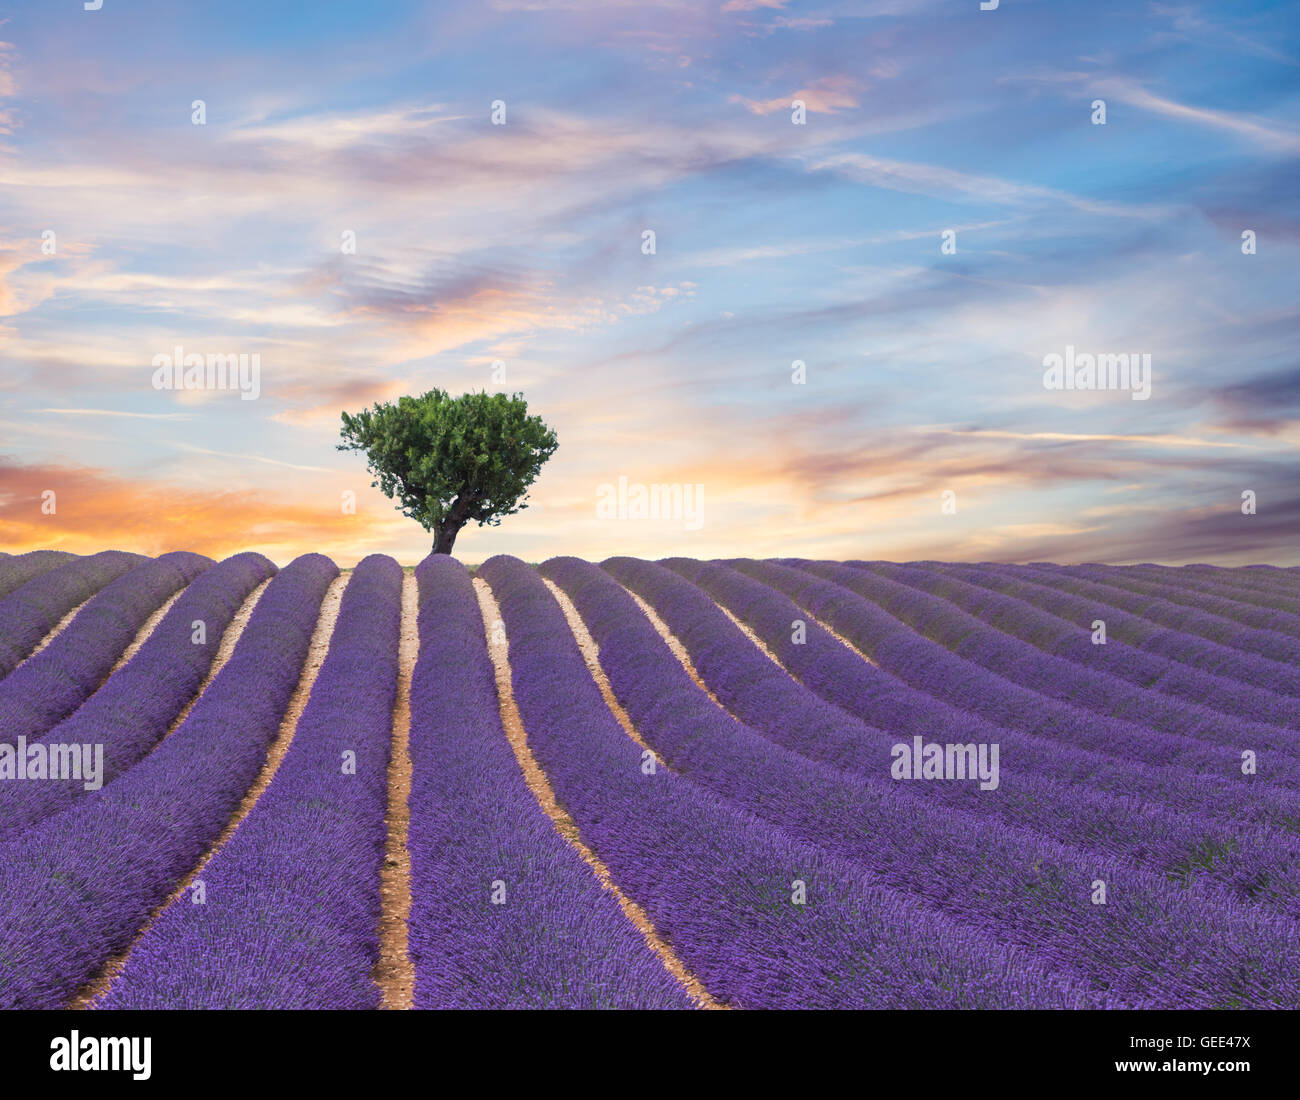 Beau paysage de champ de lavande en fleurs dans le coucher du soleil, lonely tree en amont sur l'horizon. Provence, France, Europe. Banque D'Images